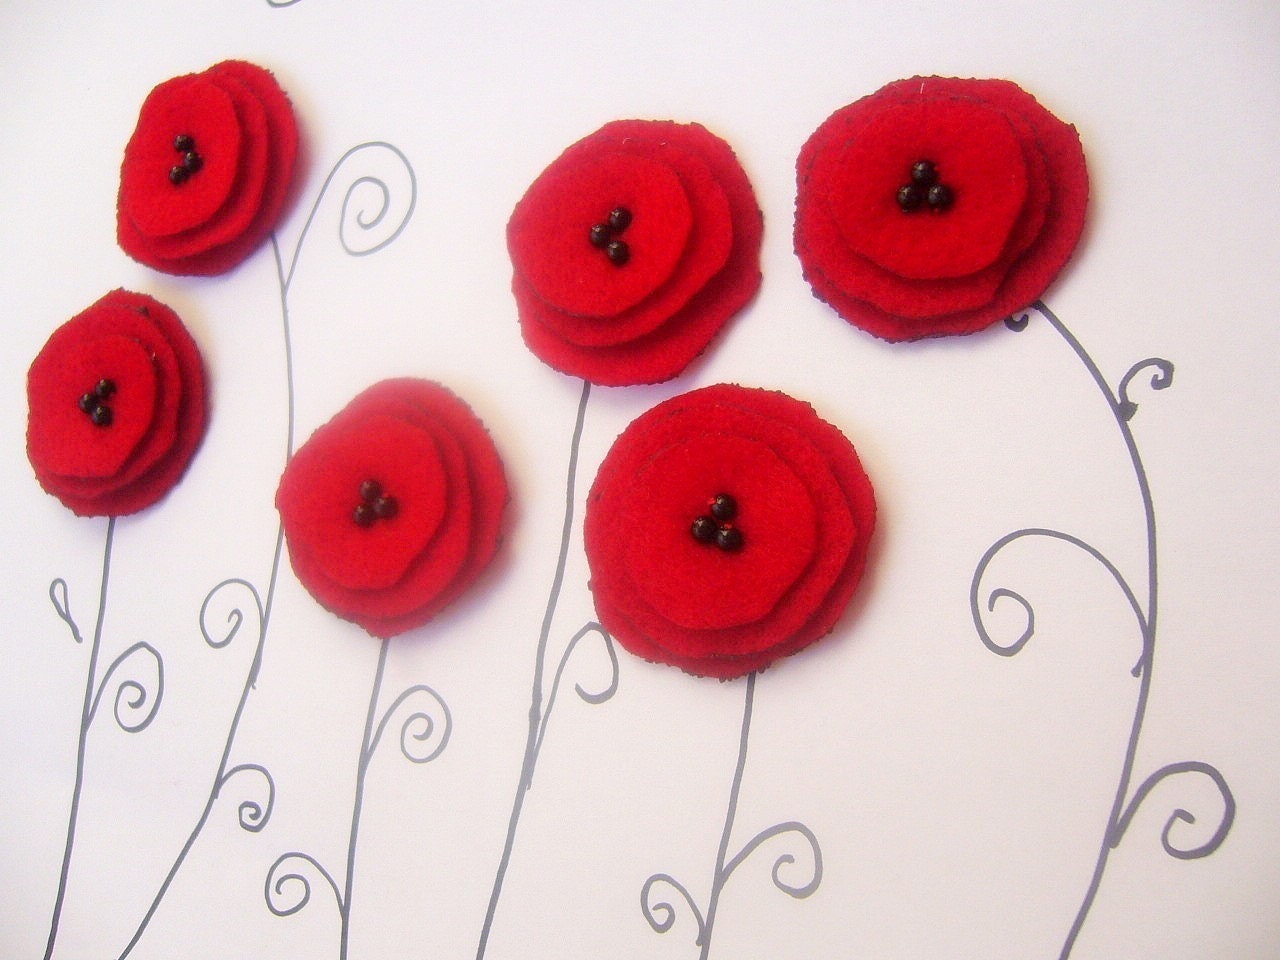 6 Red felt flower applique handmade poppy sew on embelishment glue on